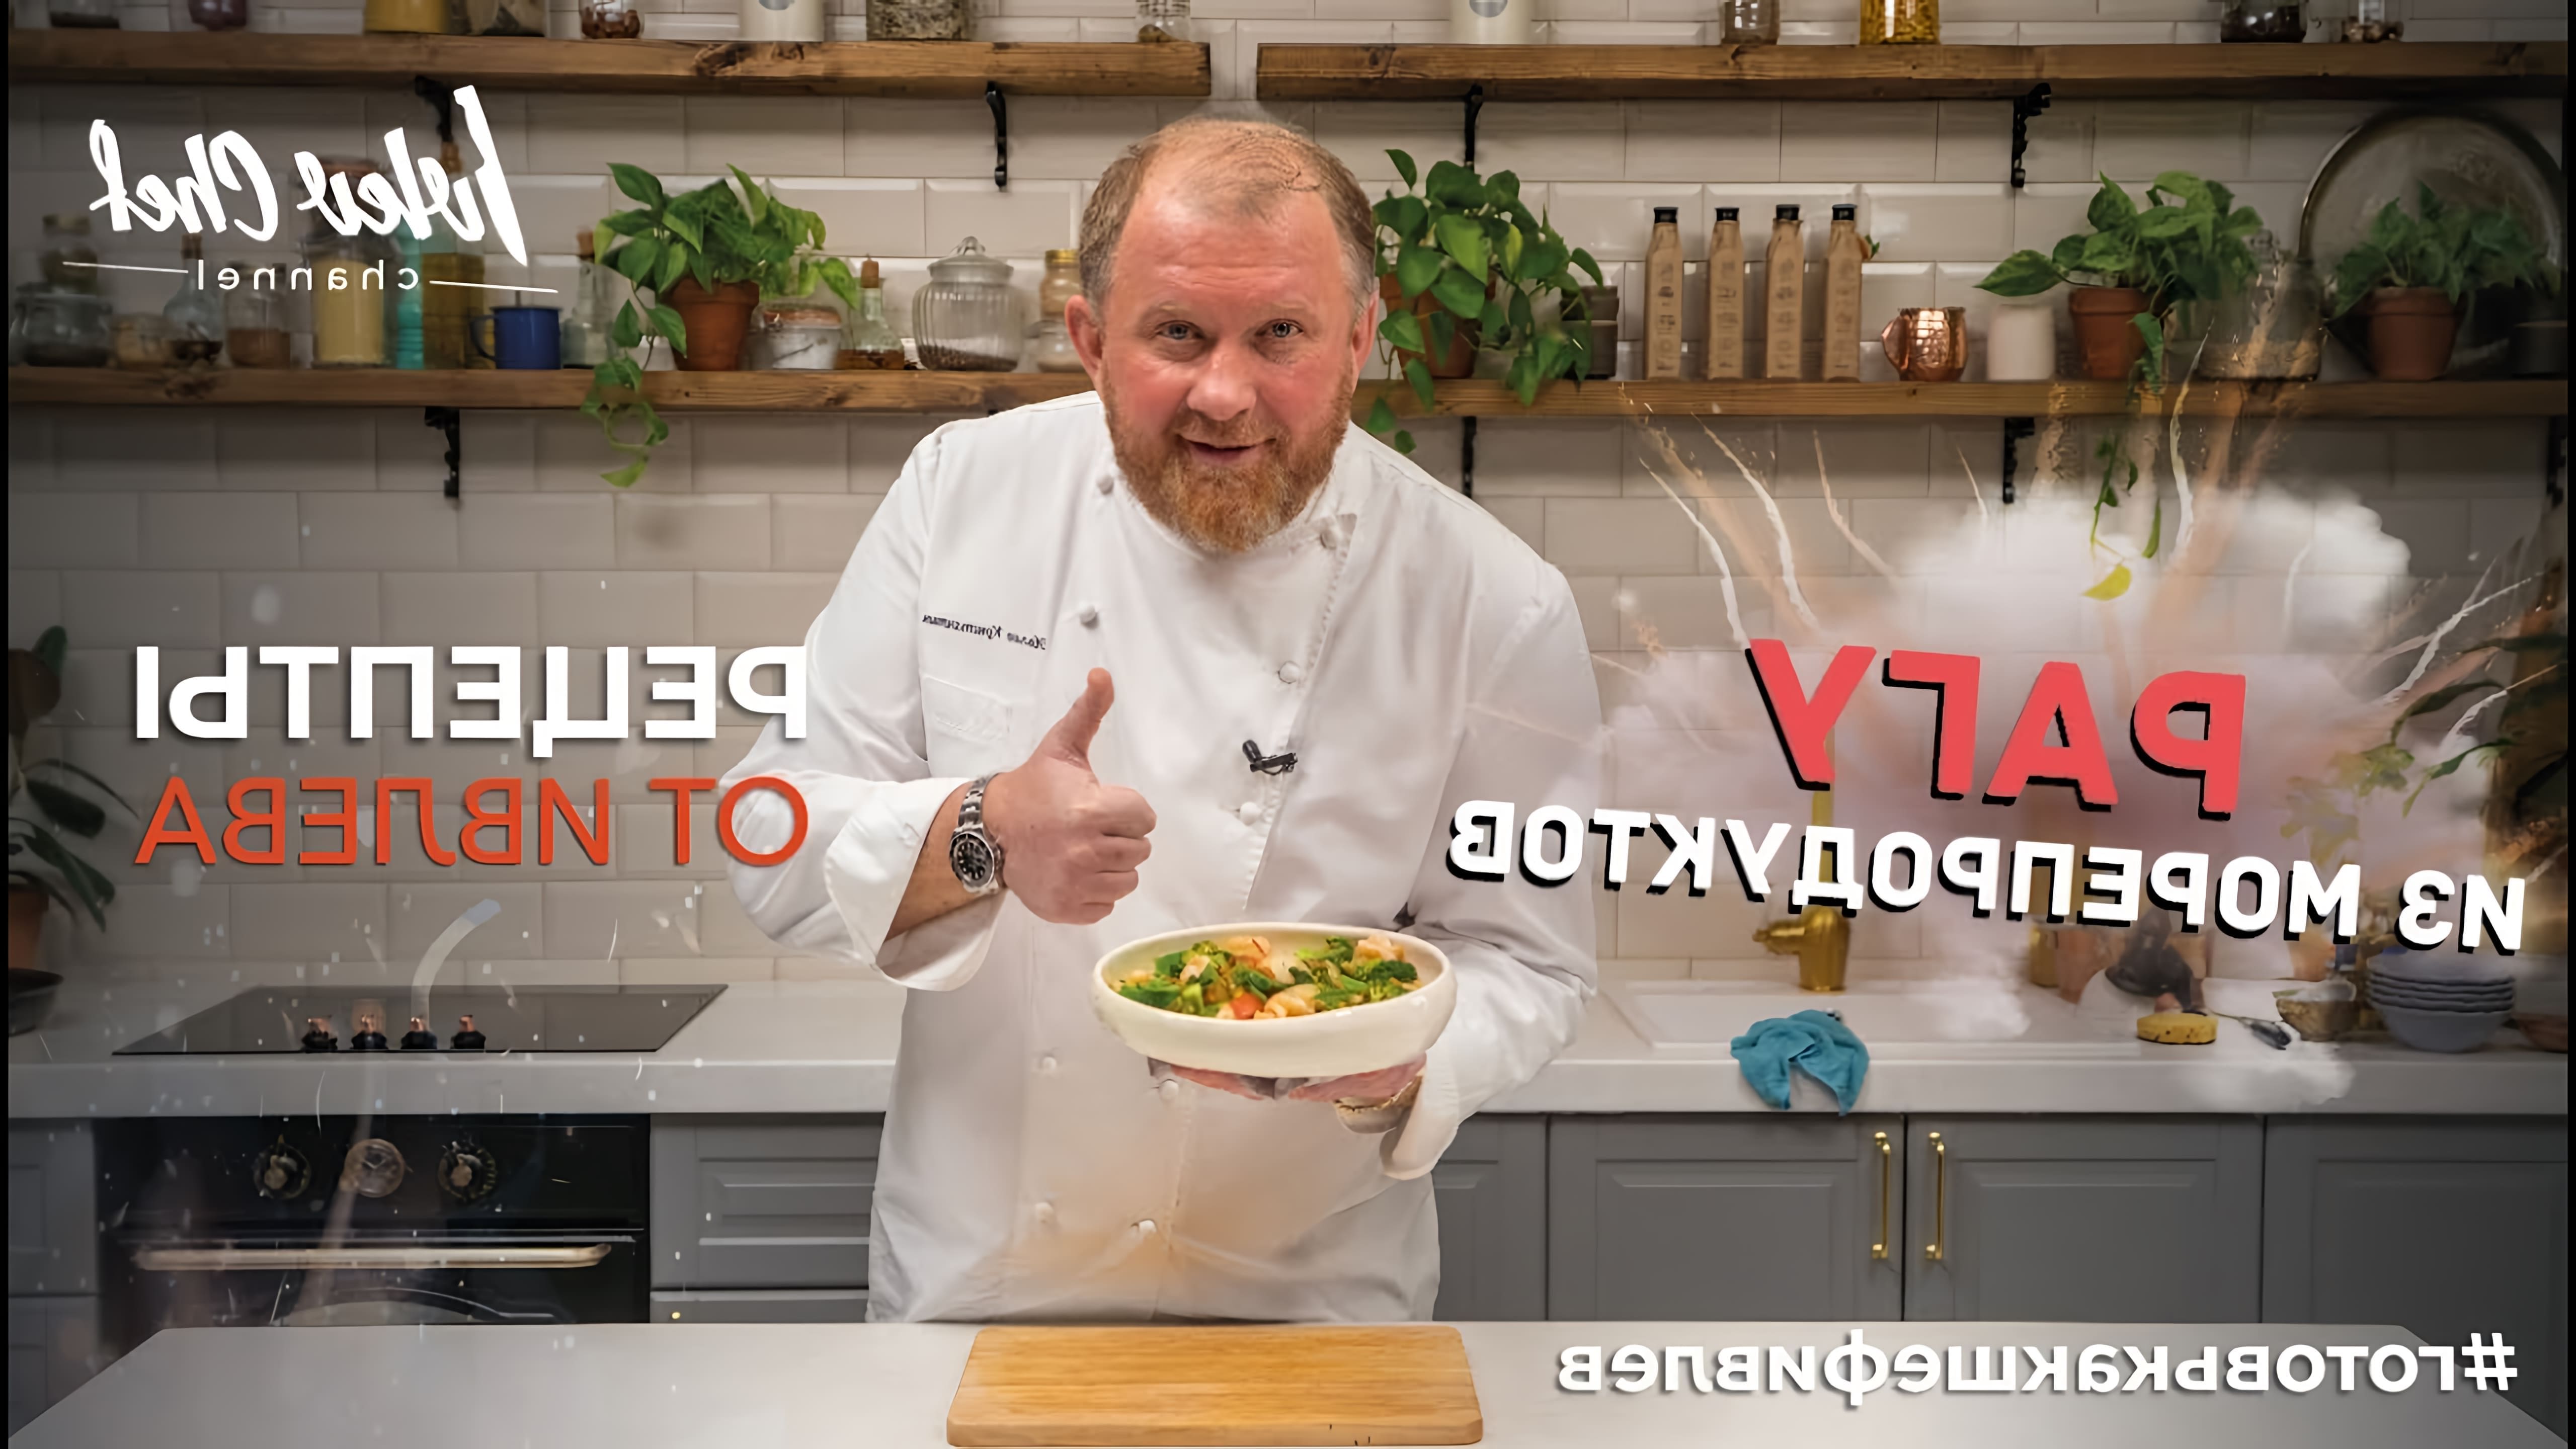 В этом видео шеф-повар показывает, как приготовить рагу из креветок и морских гребешков с зелеными овощами и томатами